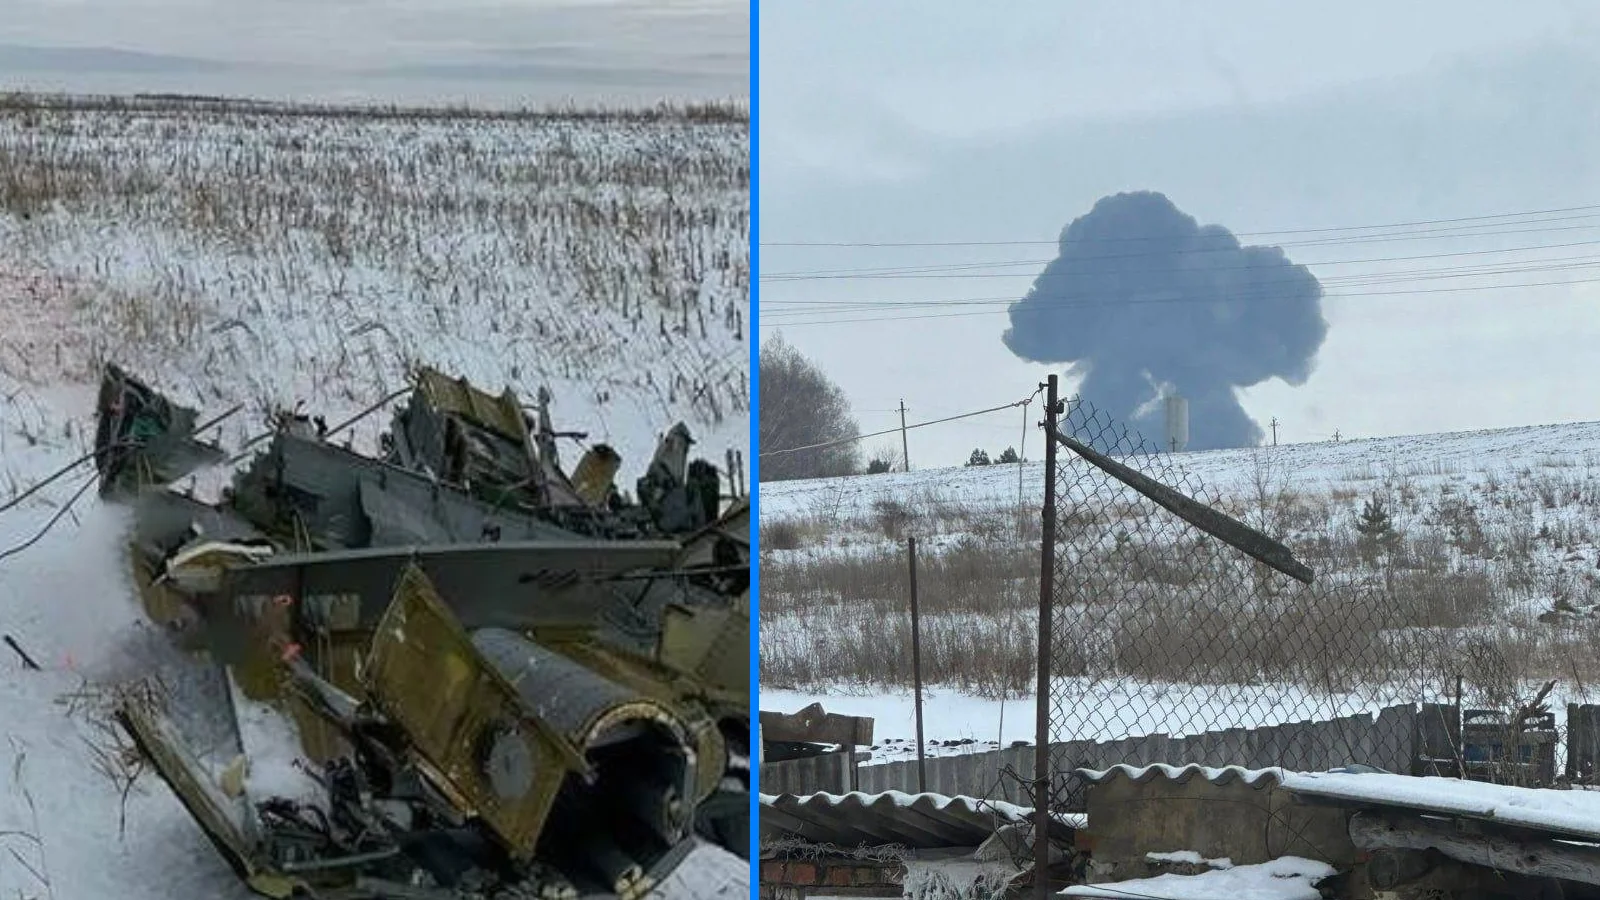 Tragedie aeriană în Belgorod Rusia! 65 de vieți pierdute în accidentul aviatic